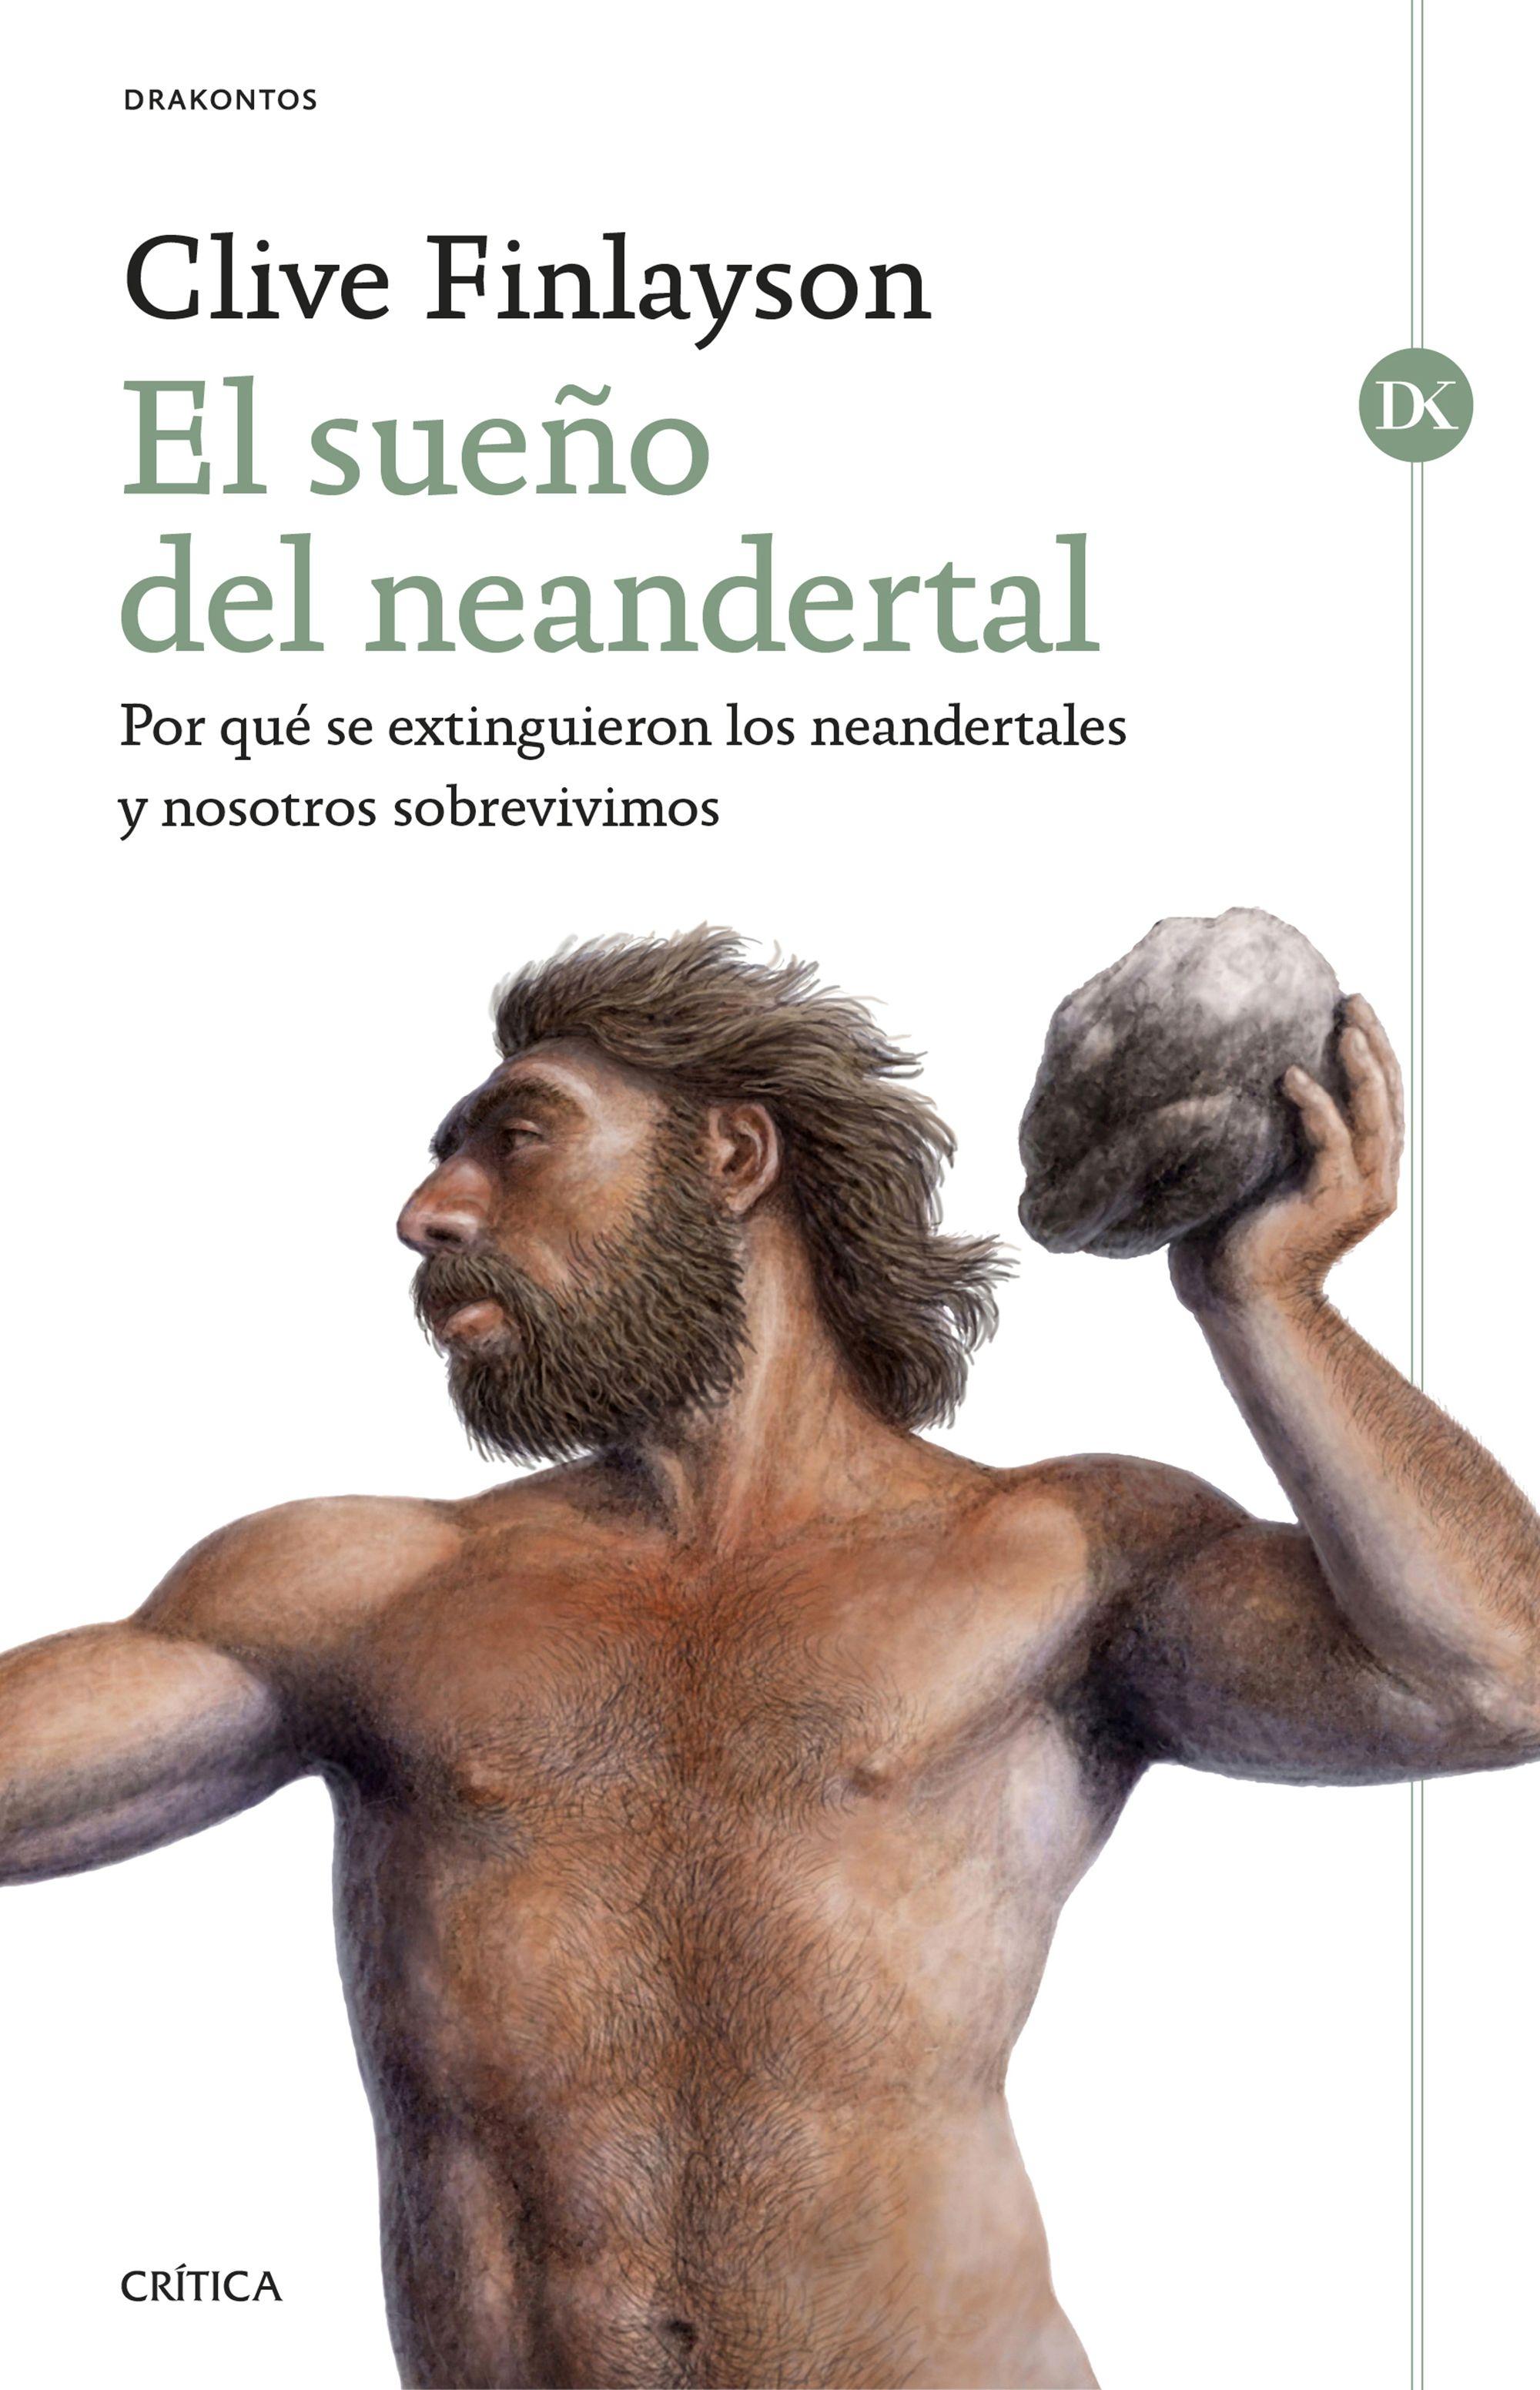 El sueño del neandertal "Por qué se extinguieron los neandertales y nosotros sobrevivimos"